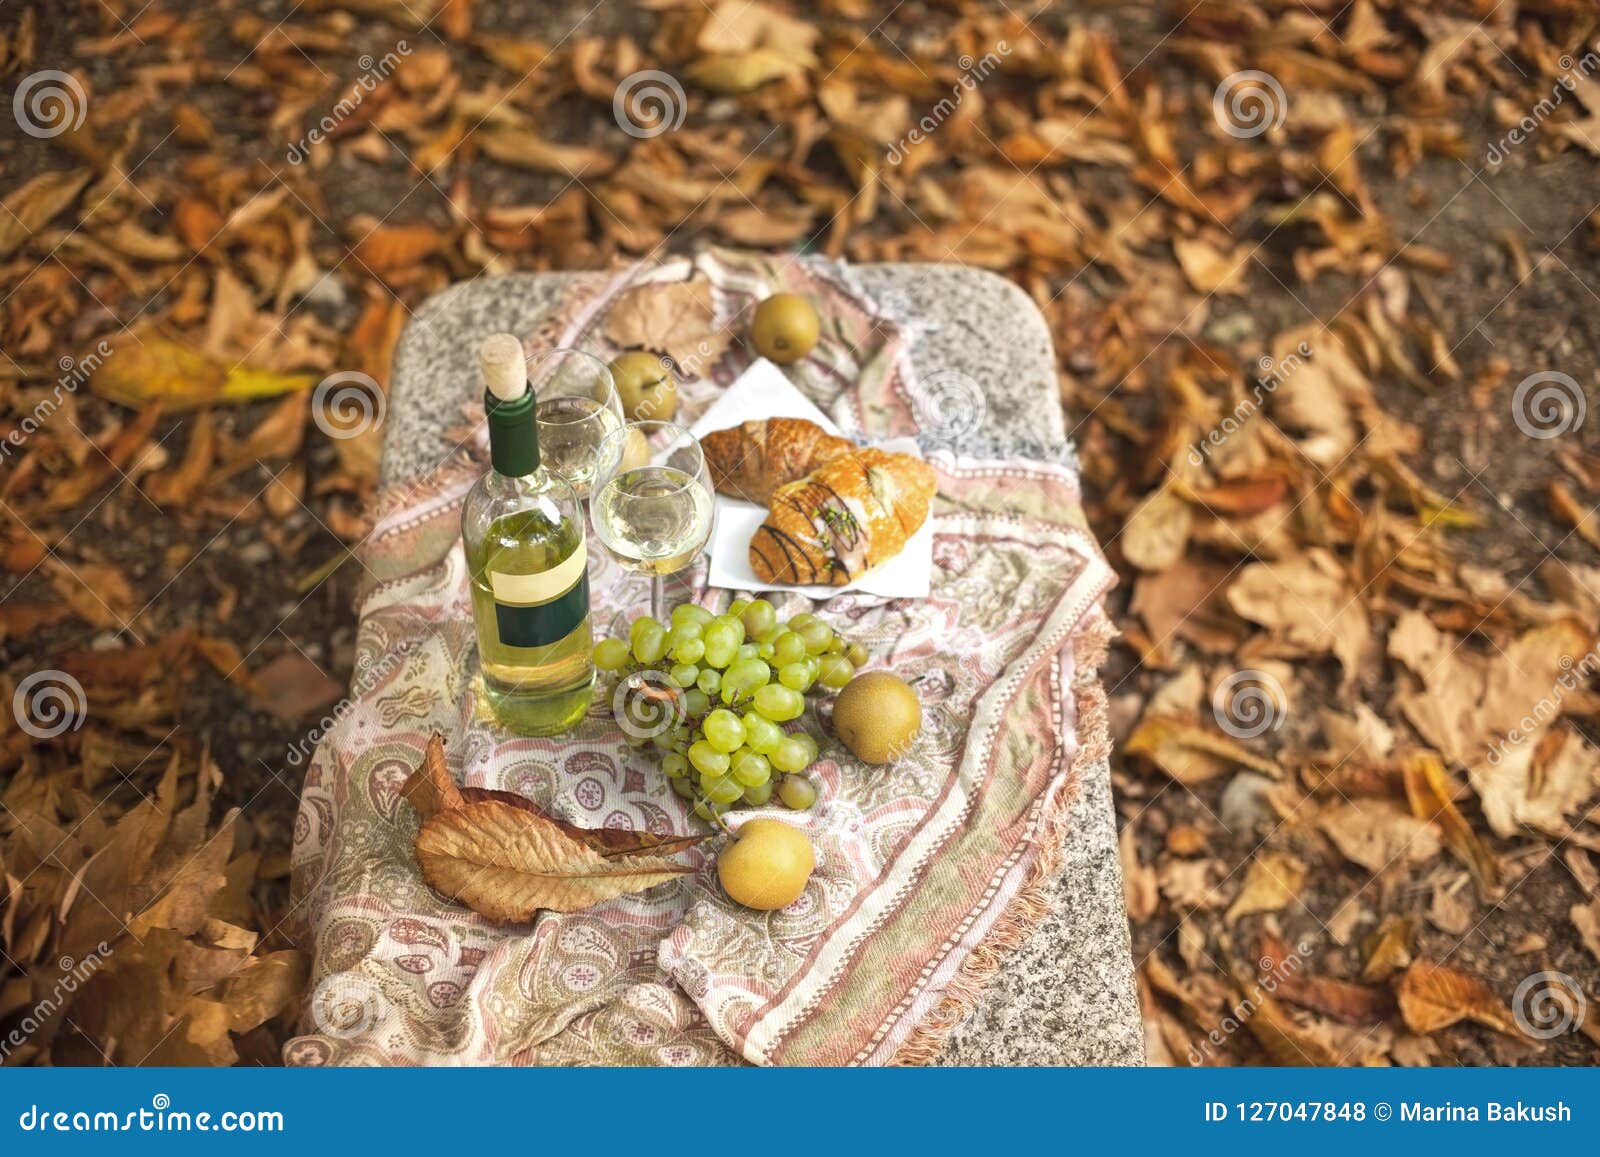 De Gouden Herfst En Bladeren in Het Picknick Met Wijn En En De Herfstvruchten Romantische Avond Exemplaarruimte, Stock Foto - Image of picknick: 127047848